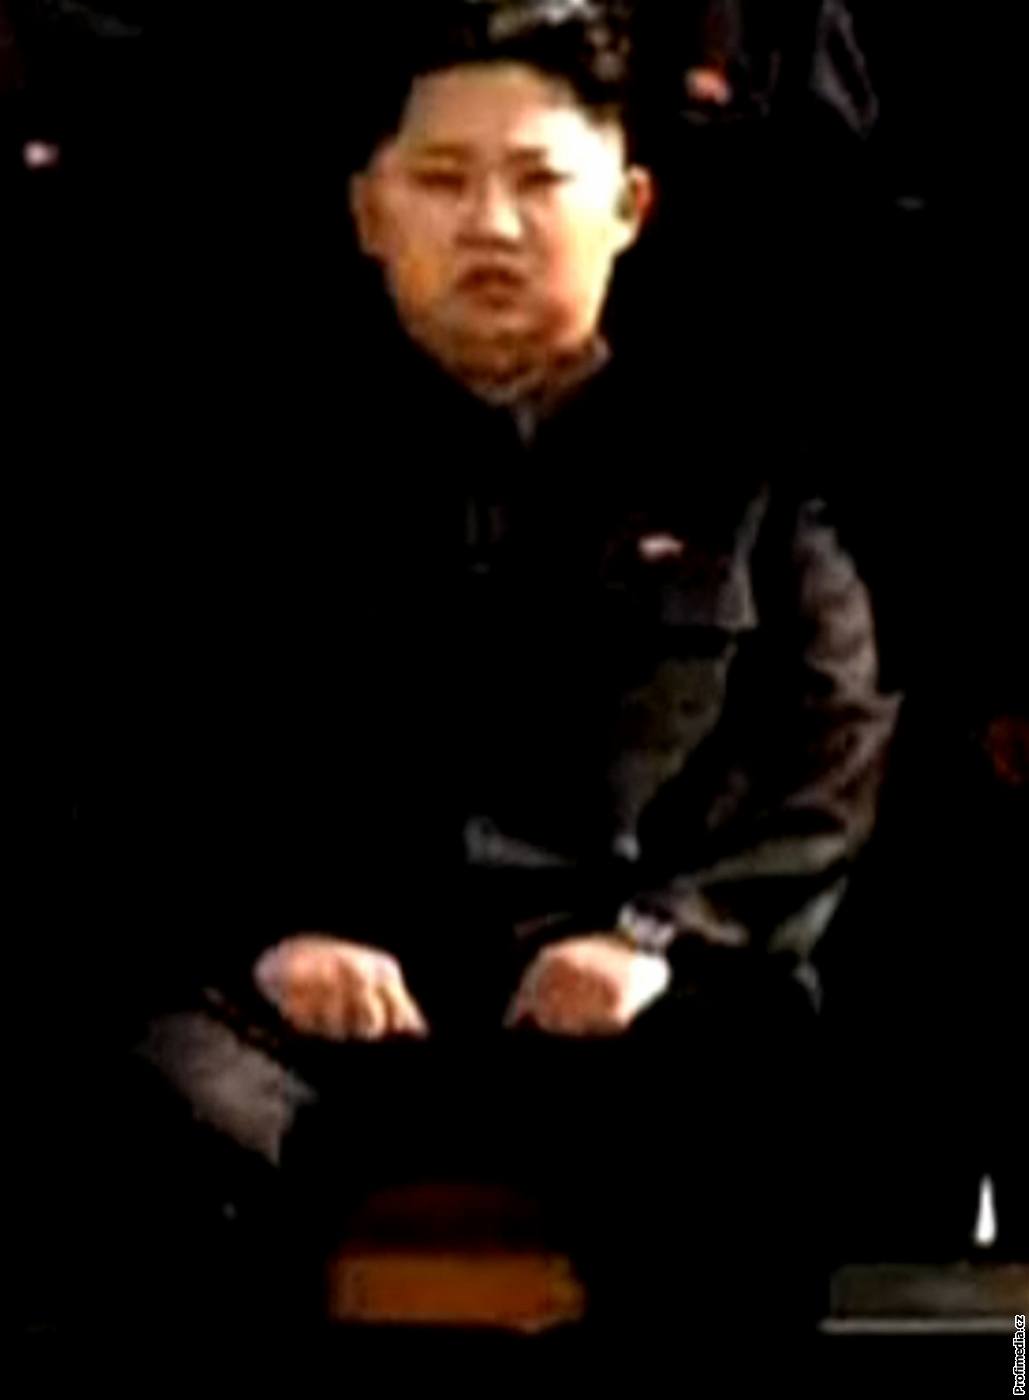 Takhle vypadá Kim ong-un na prvním oficiálním snímku, který Severní Korea vydala